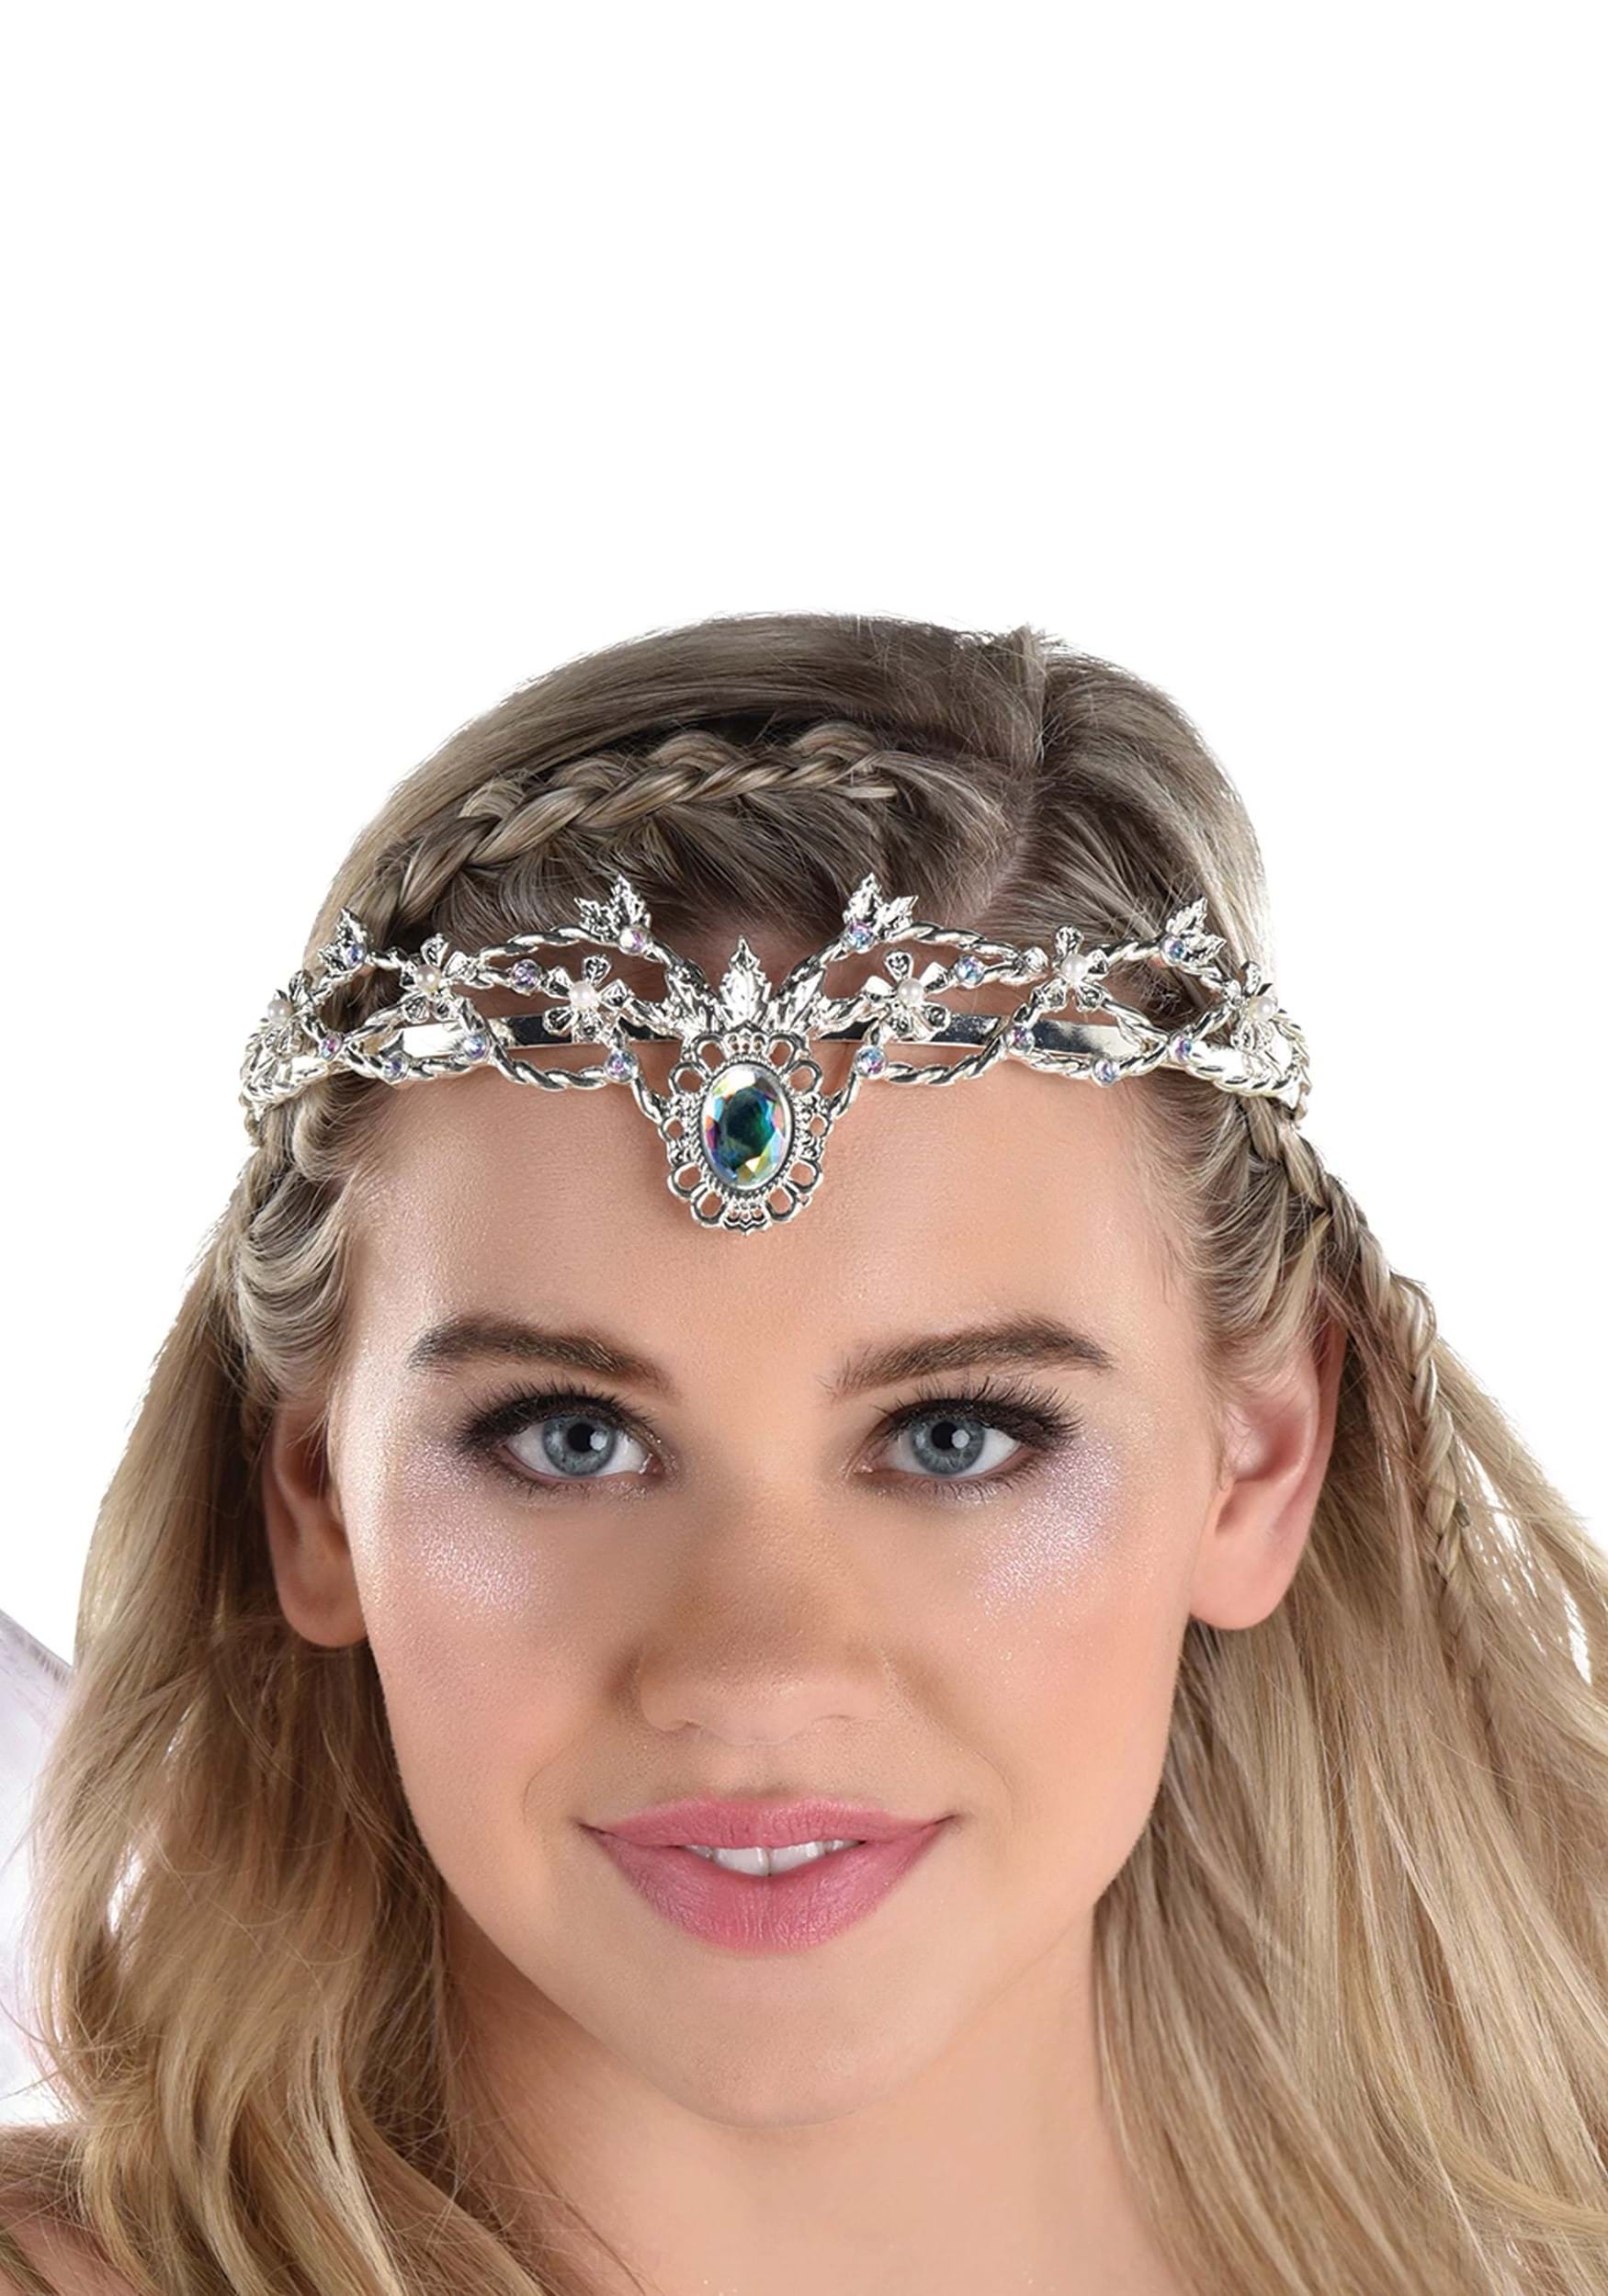 Women's Fairy Crown